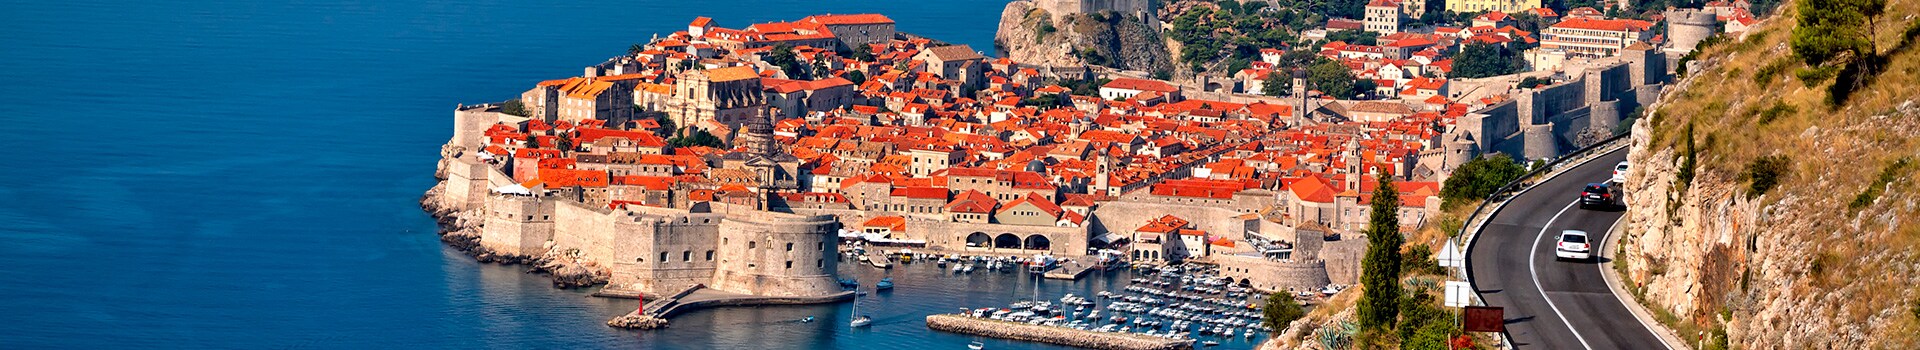 Ginevra - Dubrovnik